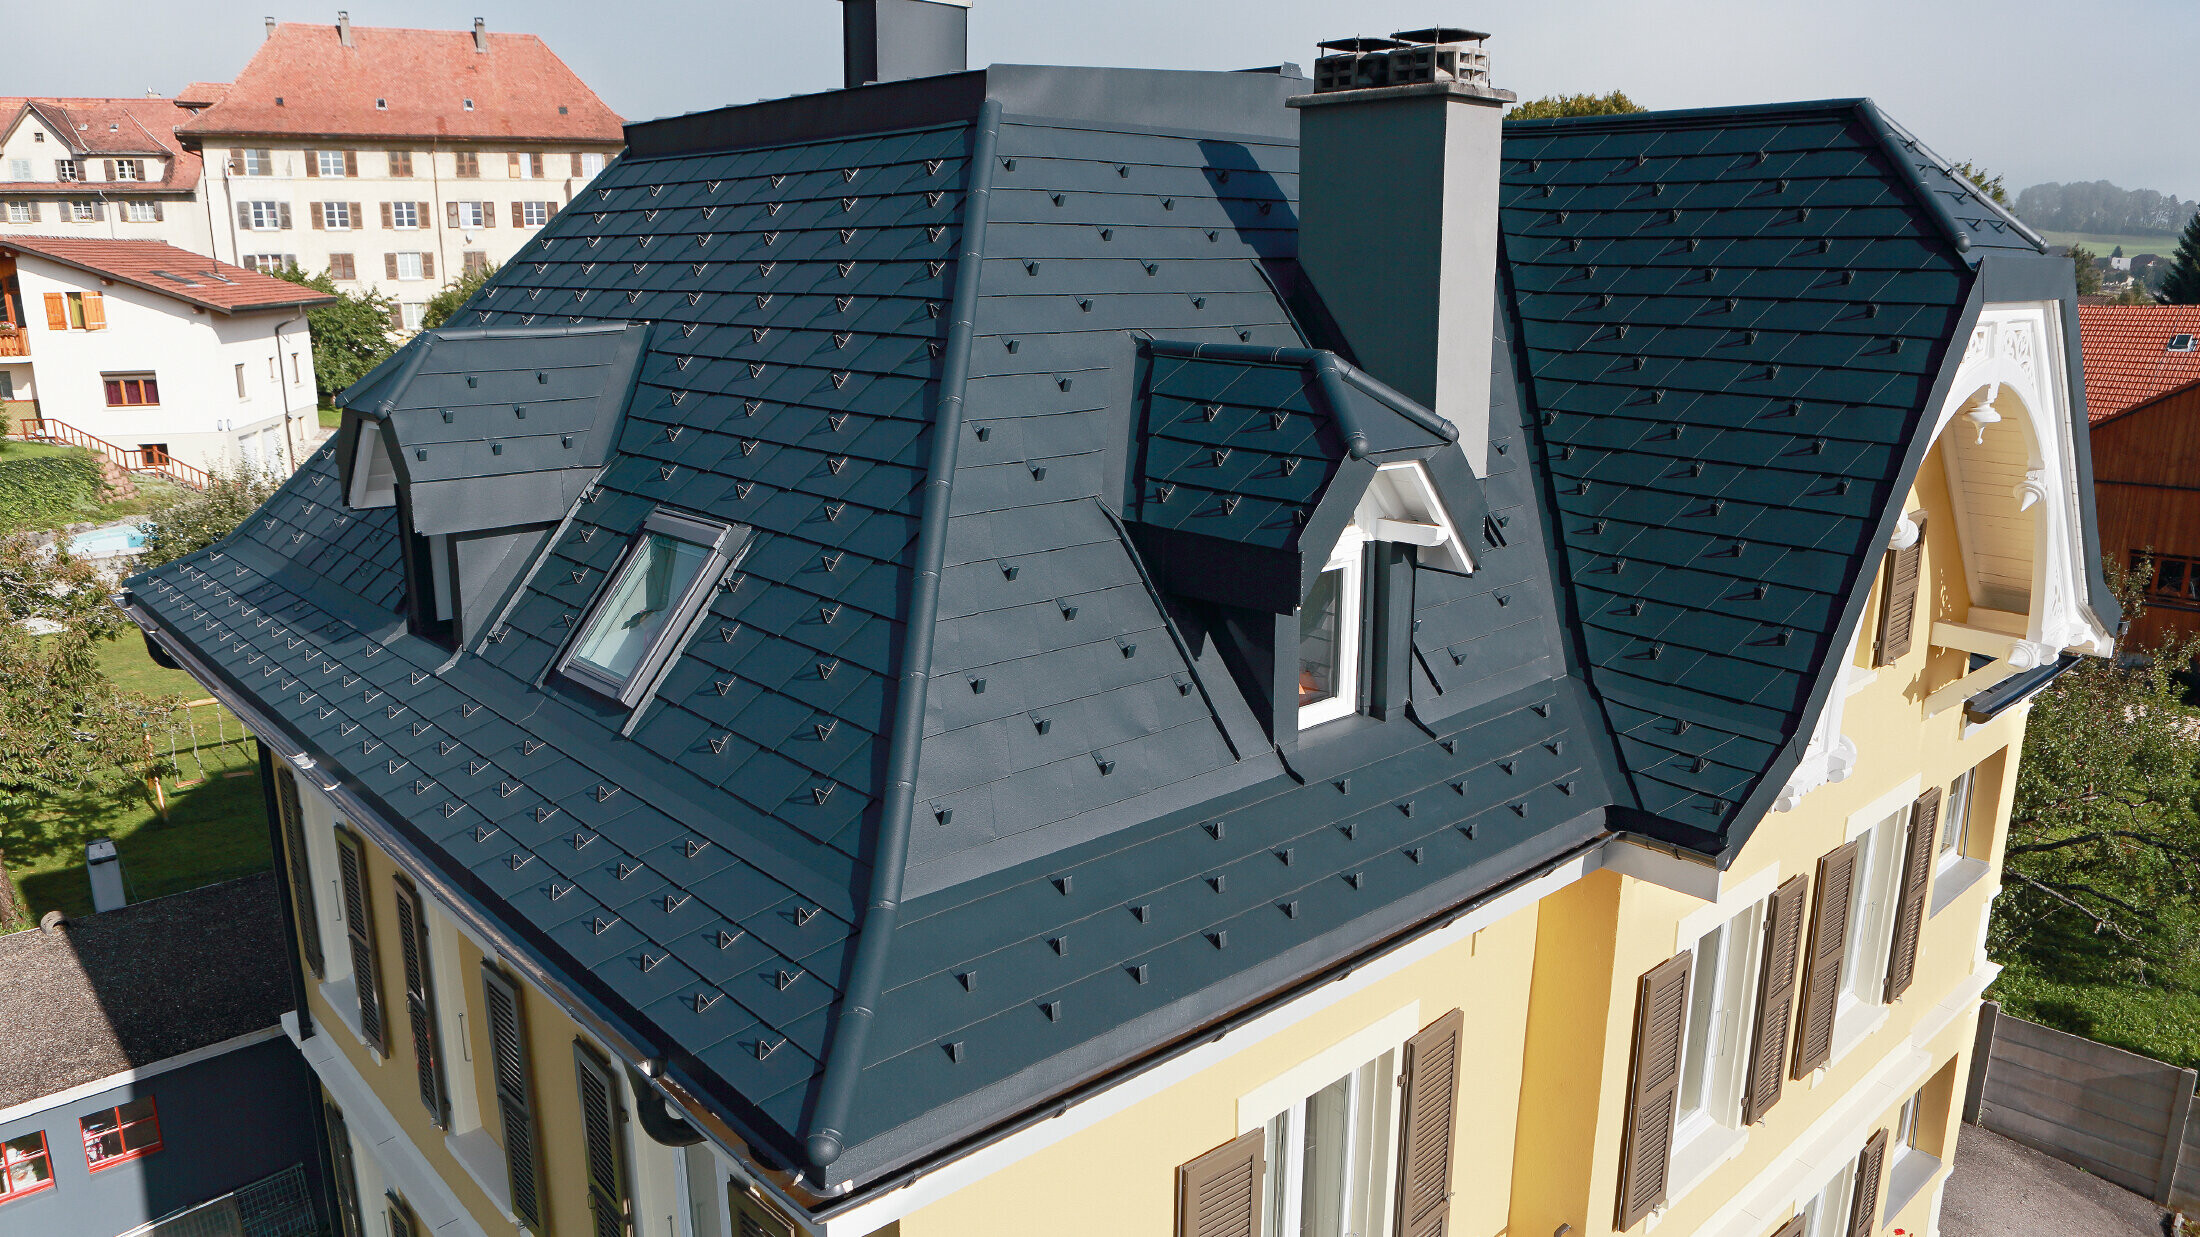 Vila ve Švýcarsku, s mnoha úžlabími a malými vikýři ve střeše; střecha je pokrytá hliníkovým PREFA falcovaným šindelem v barvě P.10 antracitové